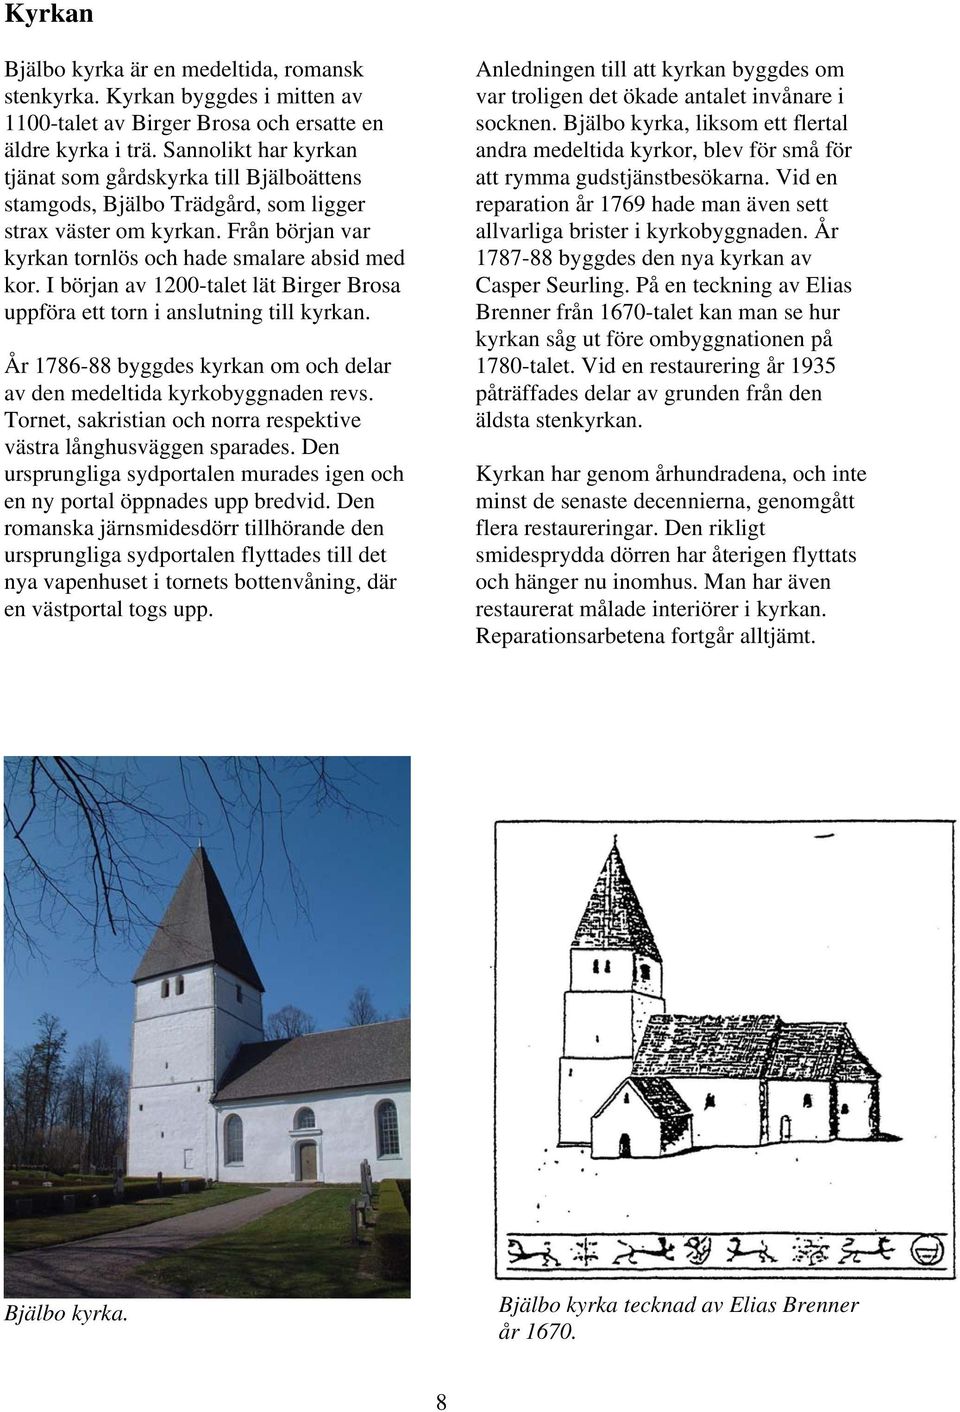 I början av 1200-talet lät Birger Brosa uppföra ett torn i anslutning till kyrkan. År 1786-88 byggdes kyrkan om och delar av den medeltida kyrkobyggnaden revs.